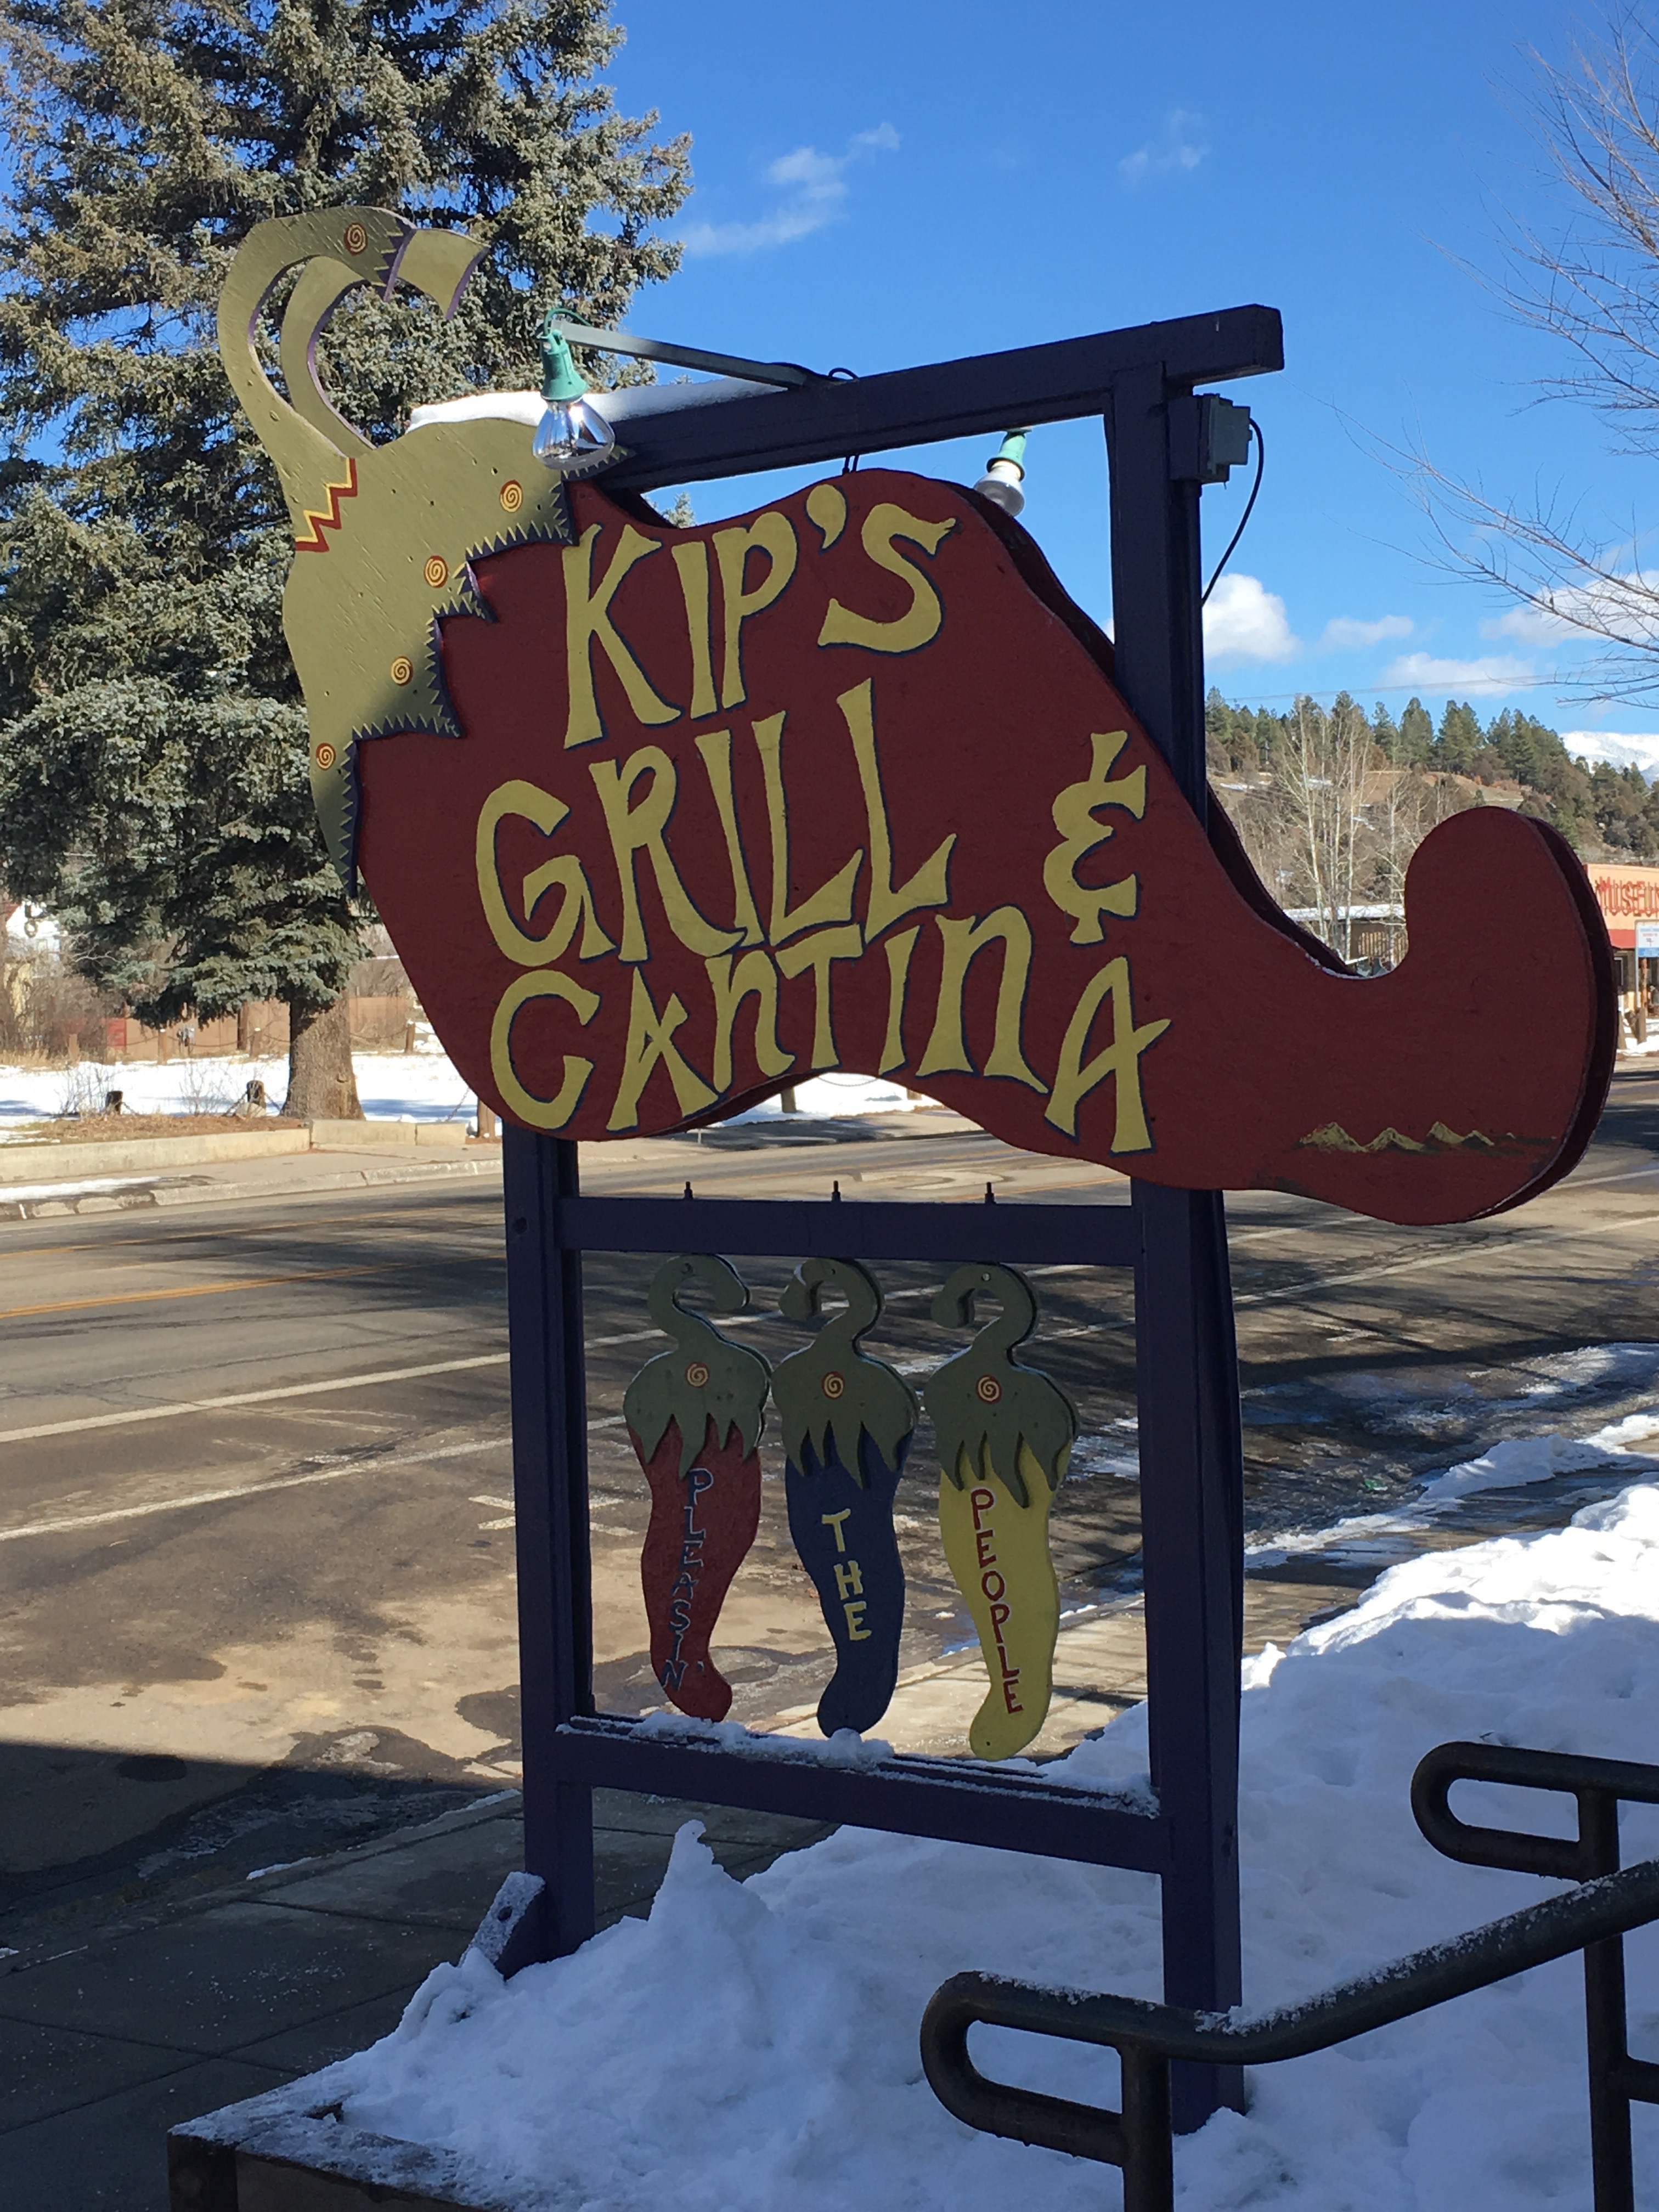 Kips Grill and Cantina Pagosa Springs